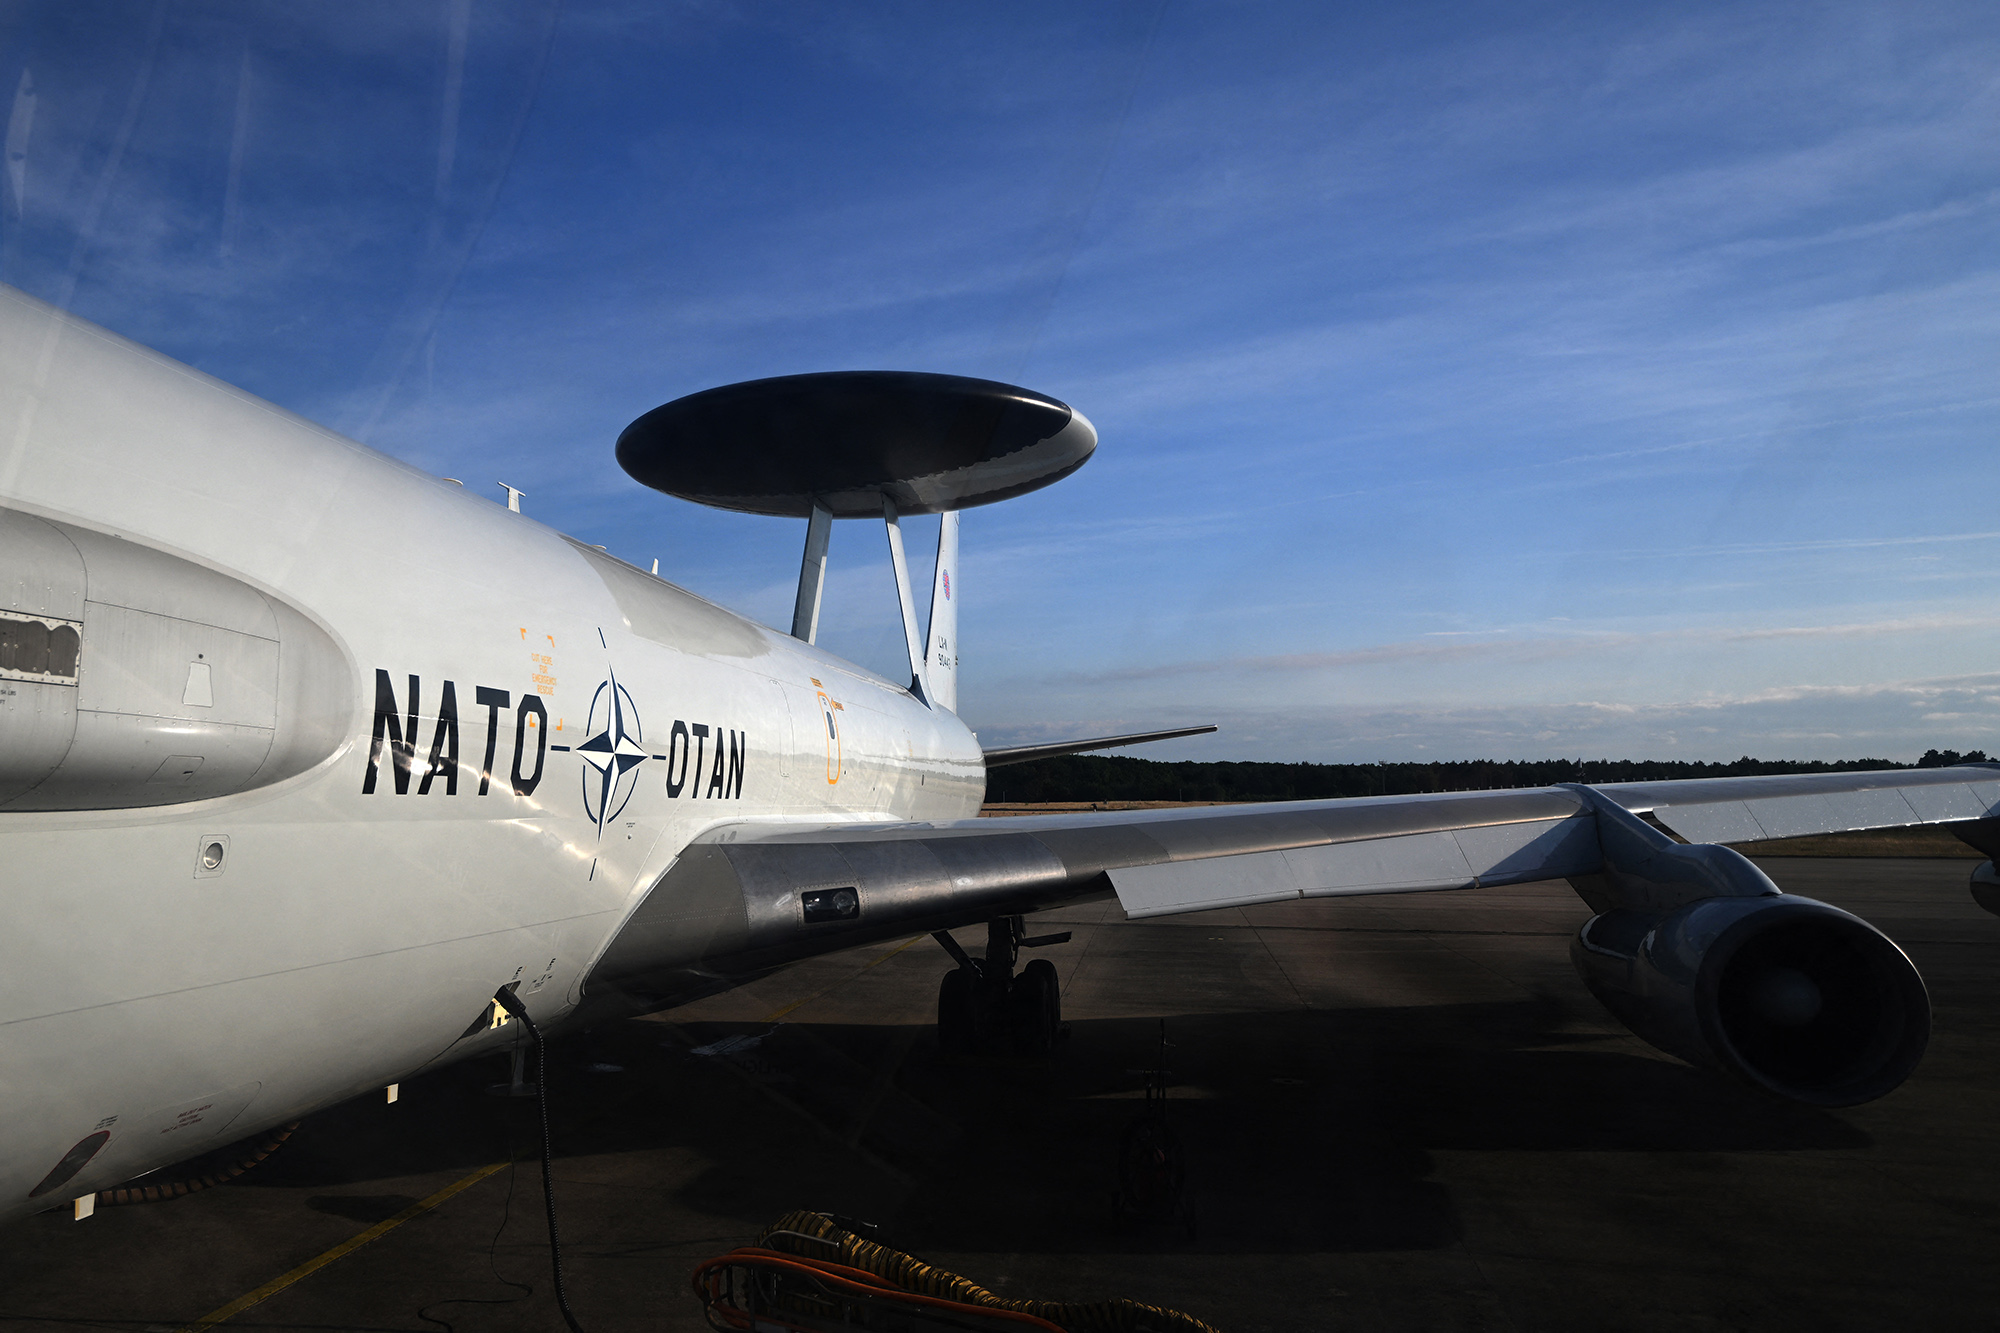 Flugzeug der Nato nimmt teil am von Deutschland geführten Nato-Großmanöver "Air Defender" (Bild: Ina Fassbender/AFP)